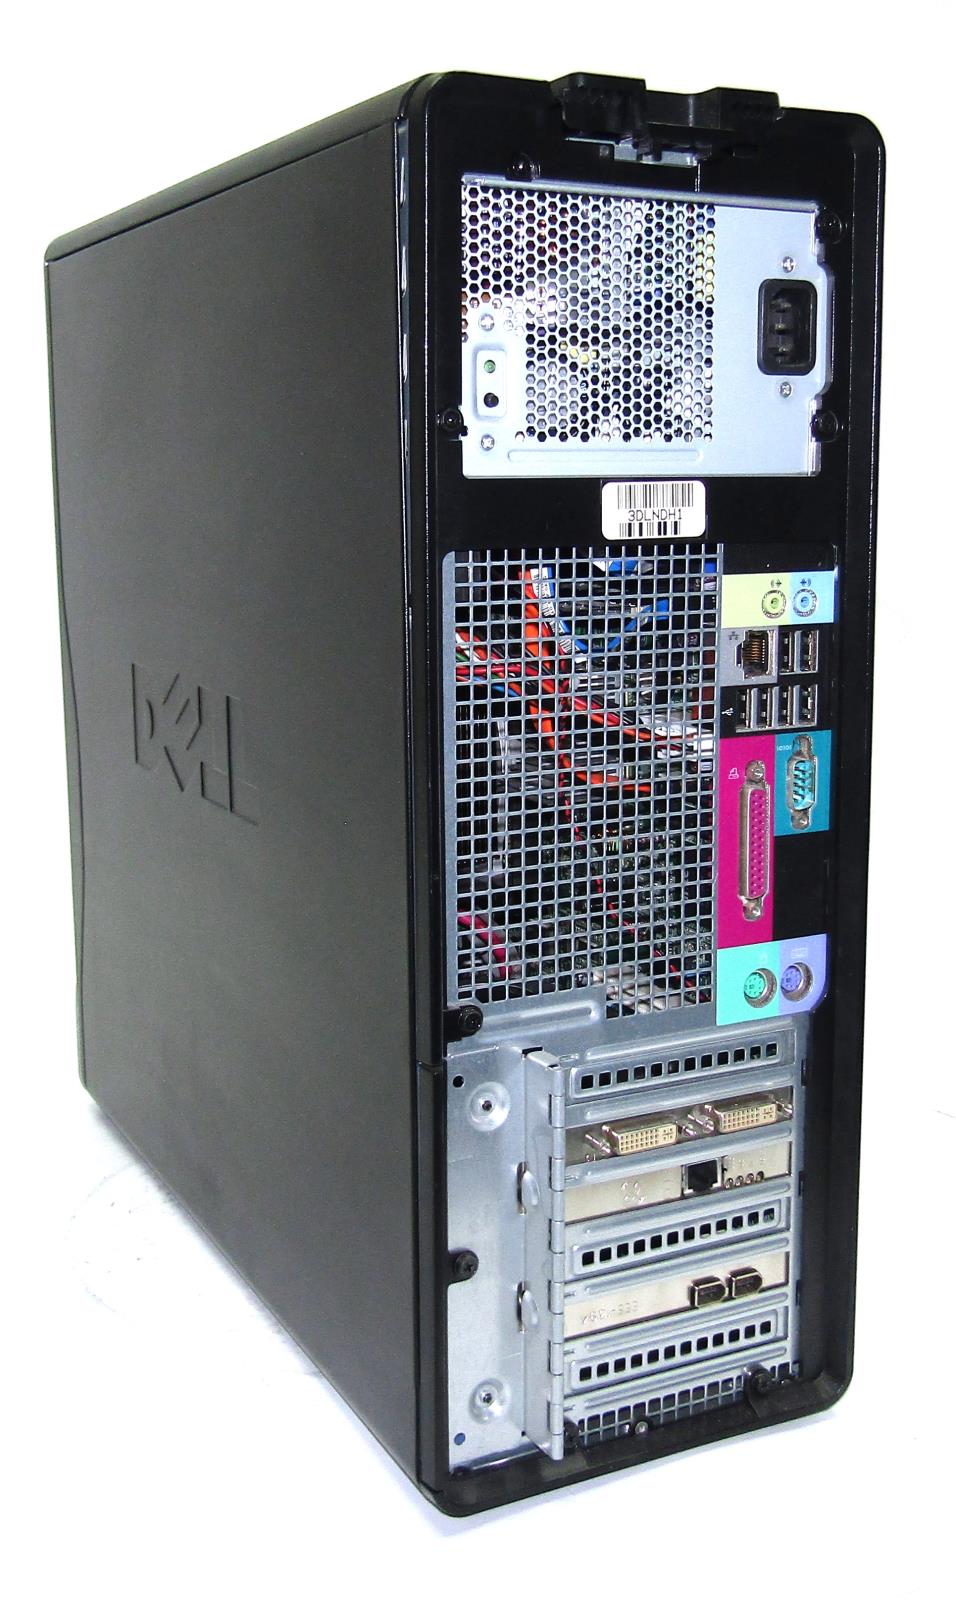 Dell t3400 bios